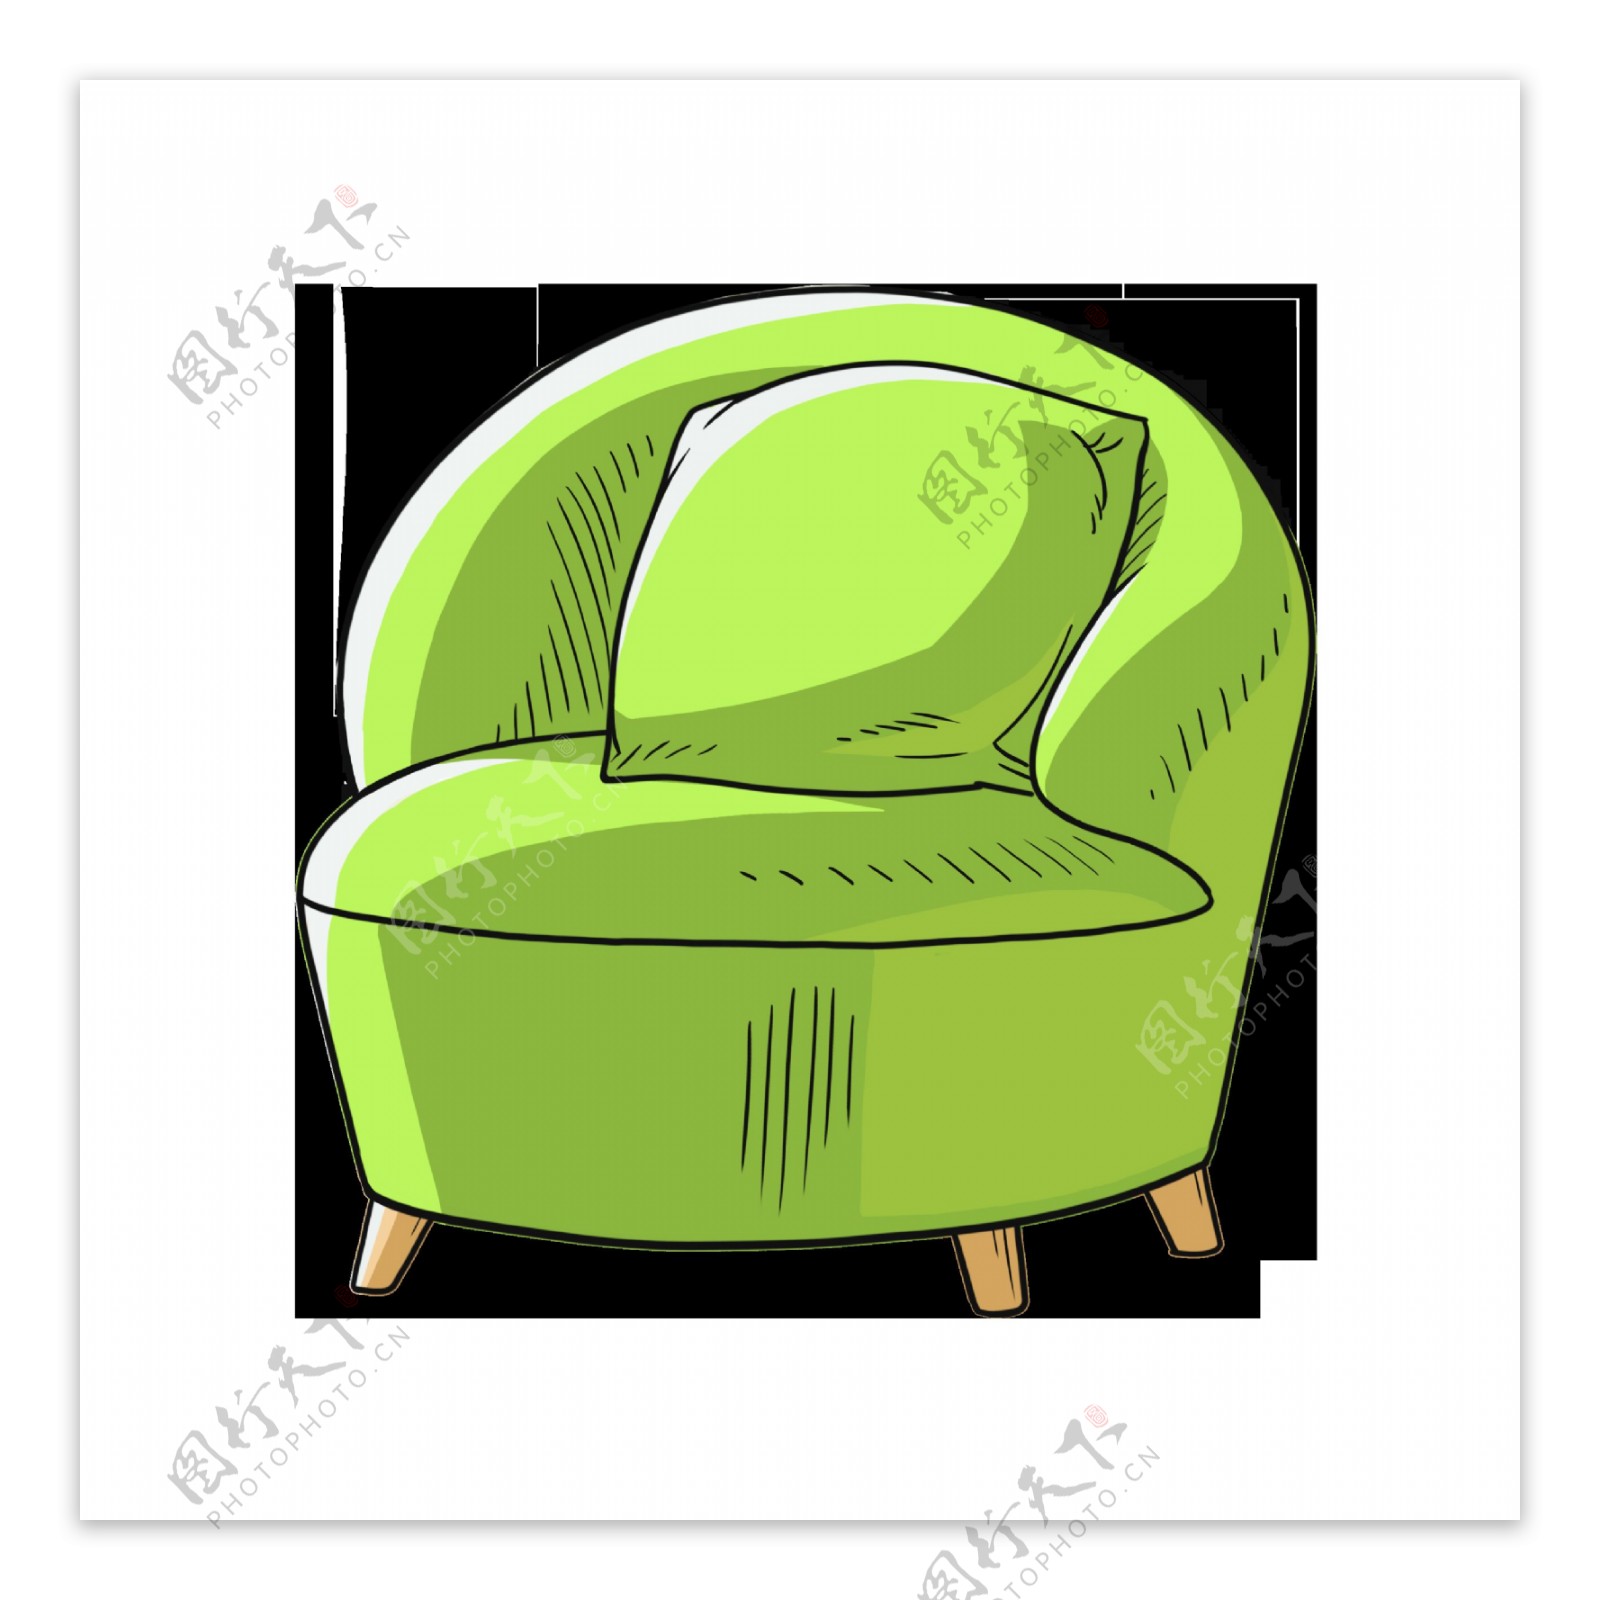 卡通免扣绿色沙发